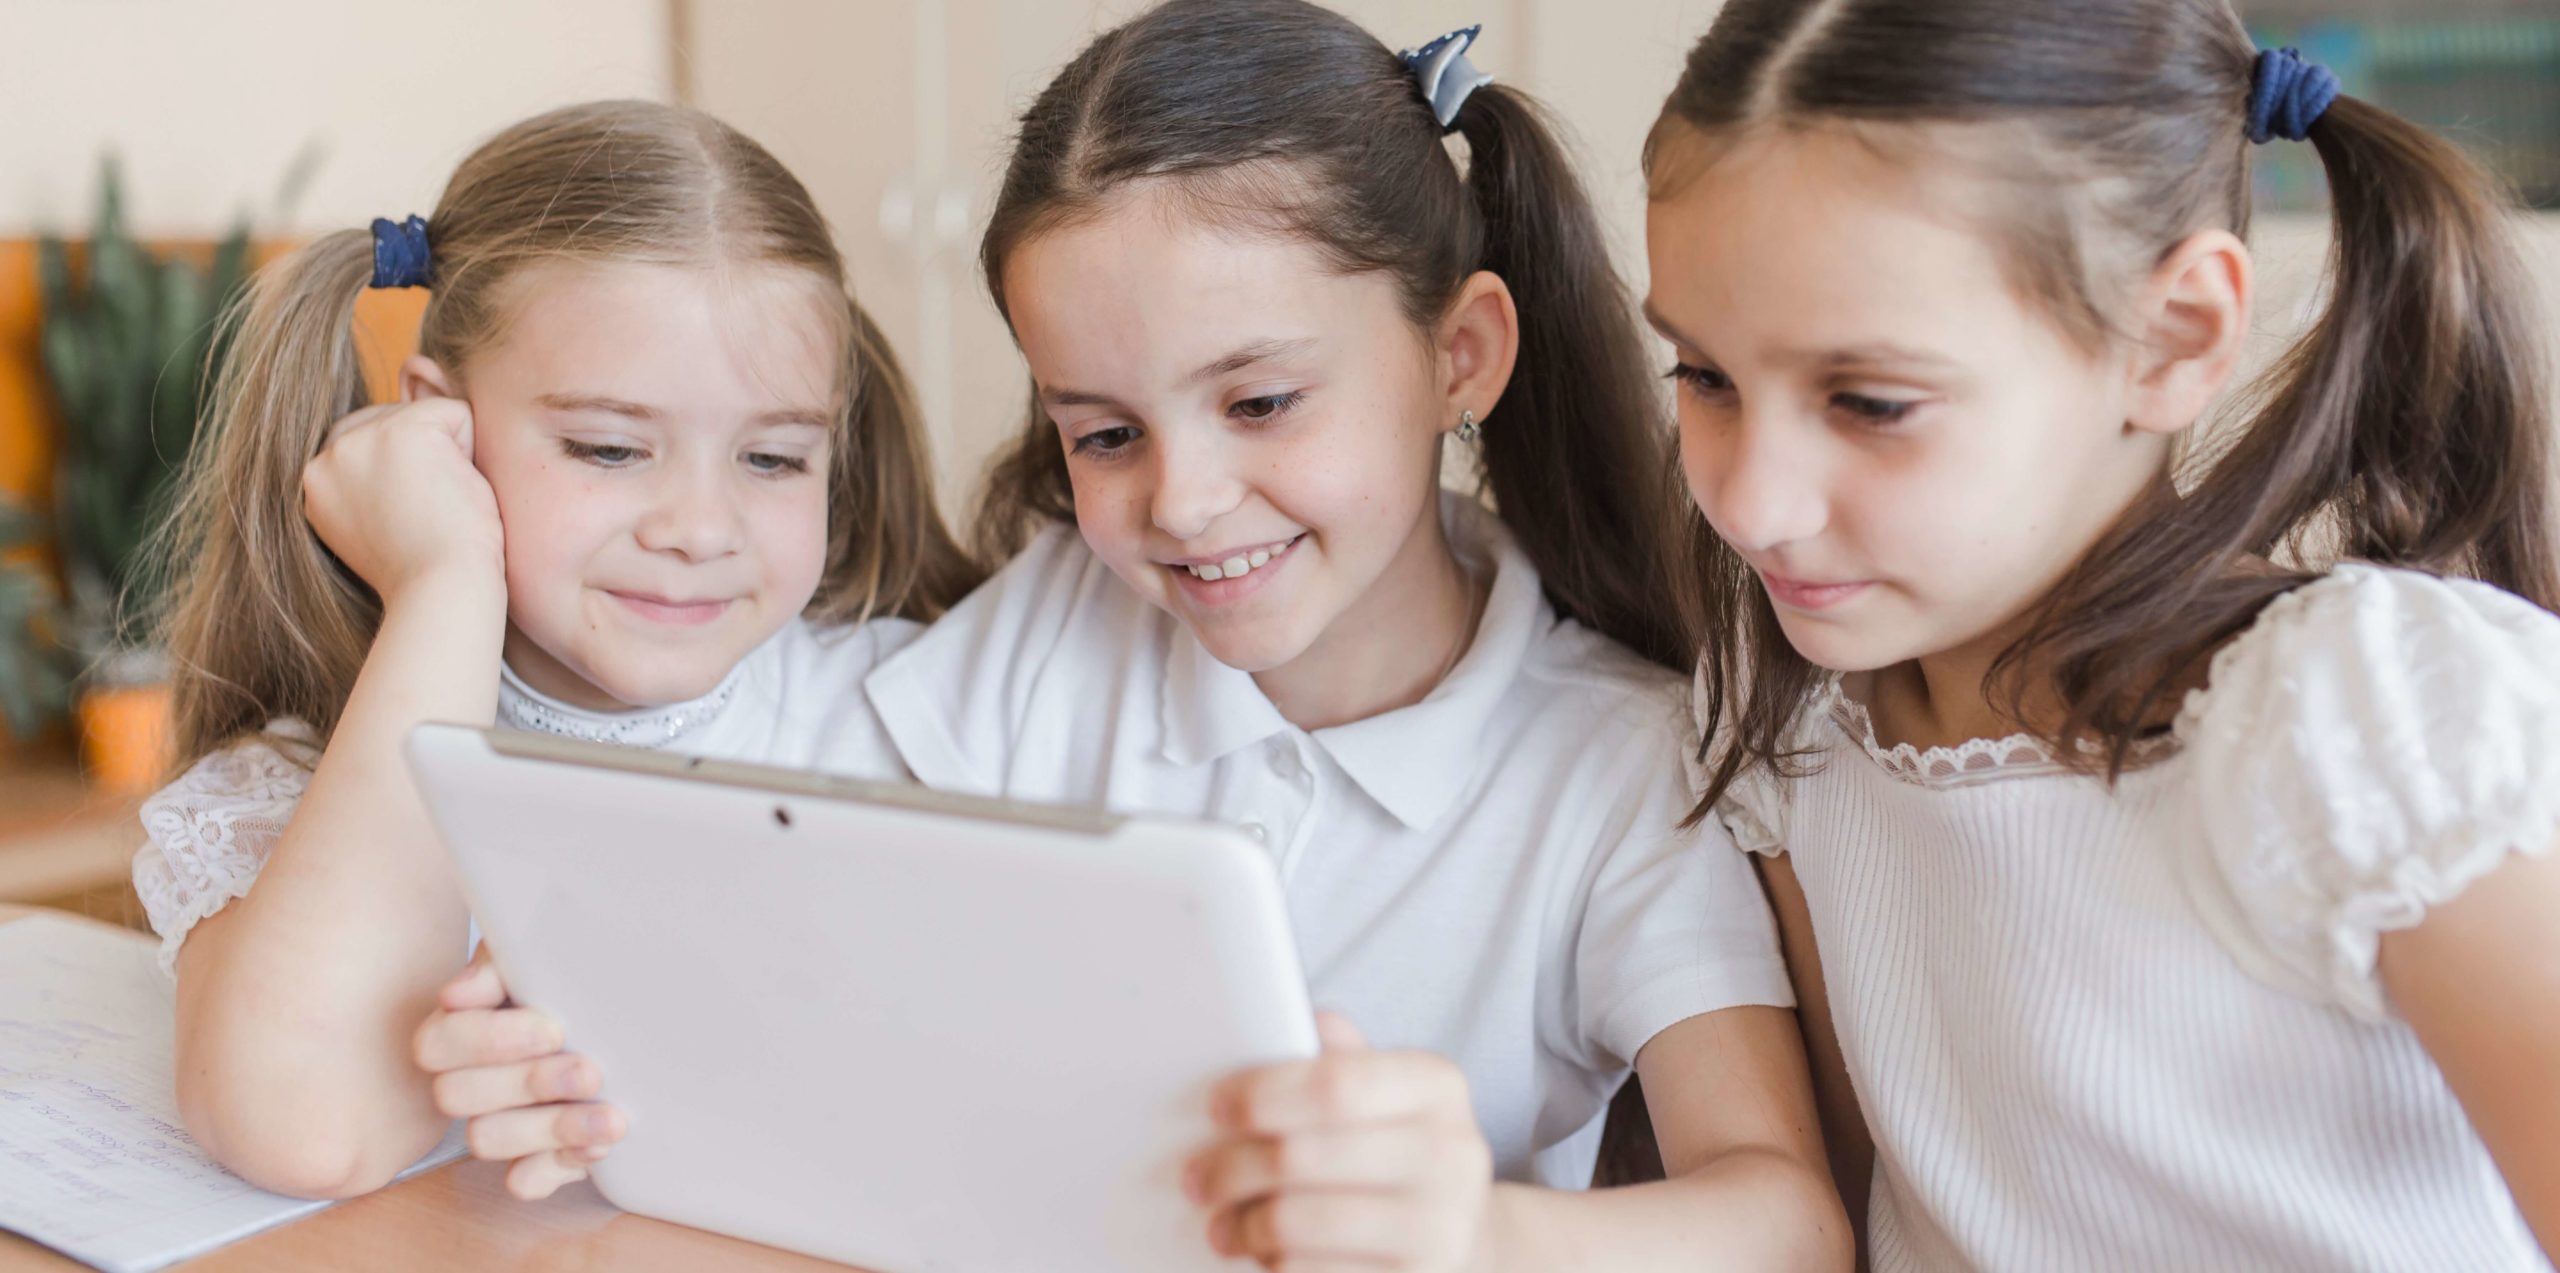 La gamificación en las Apps de Educación. Tres niñas interactuando con una tablet en el colegio.